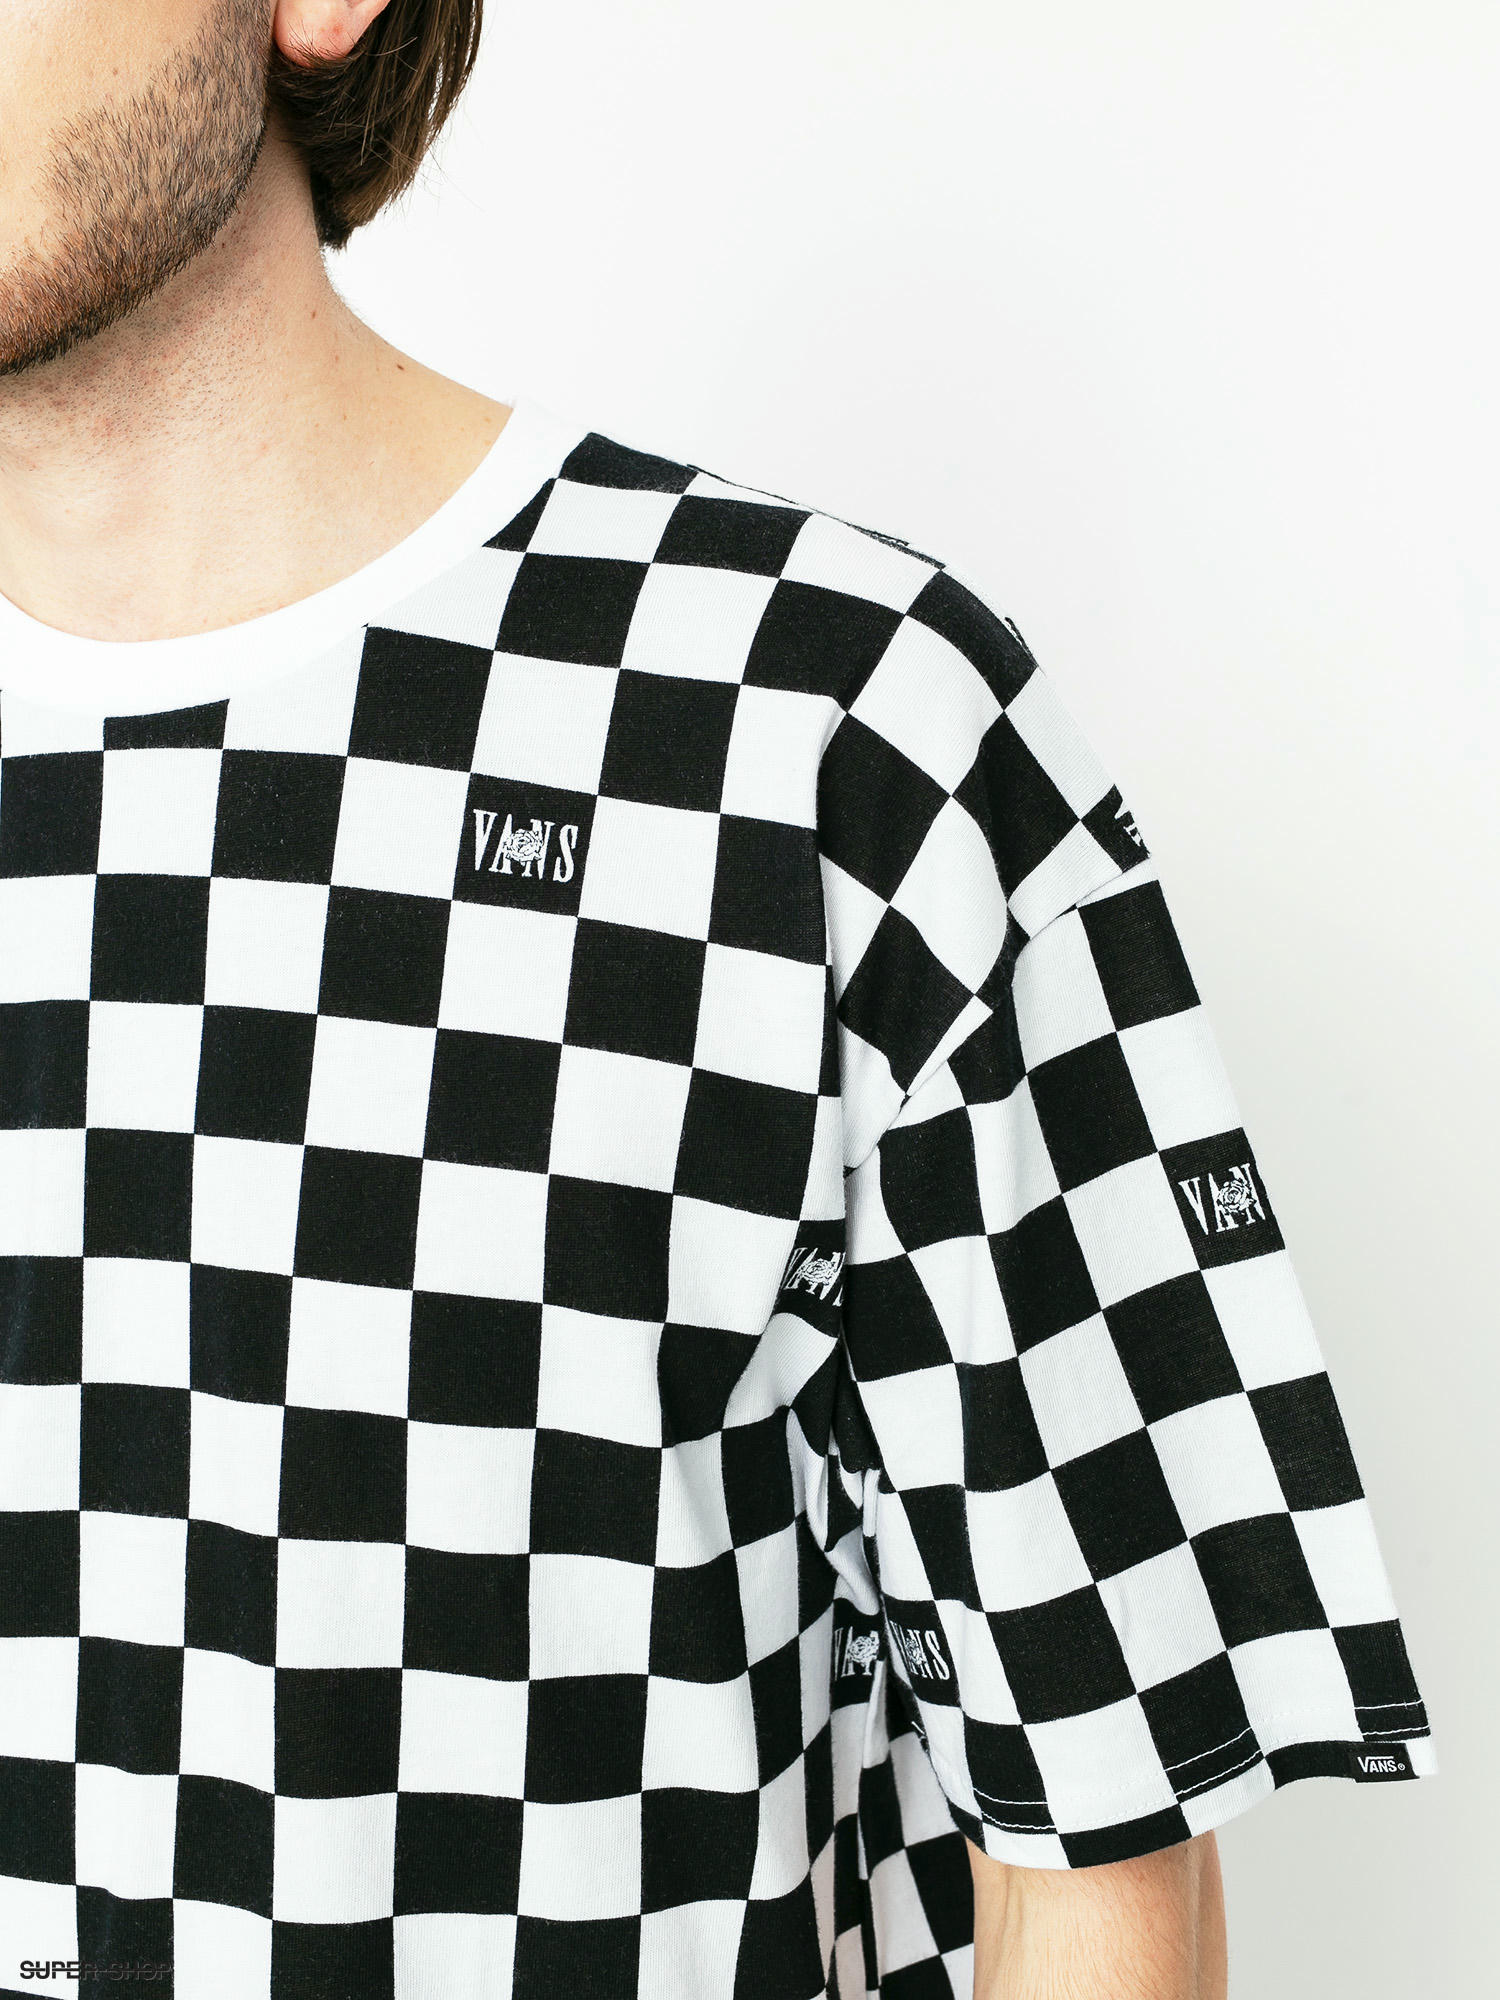 black and white checkered shirt vans